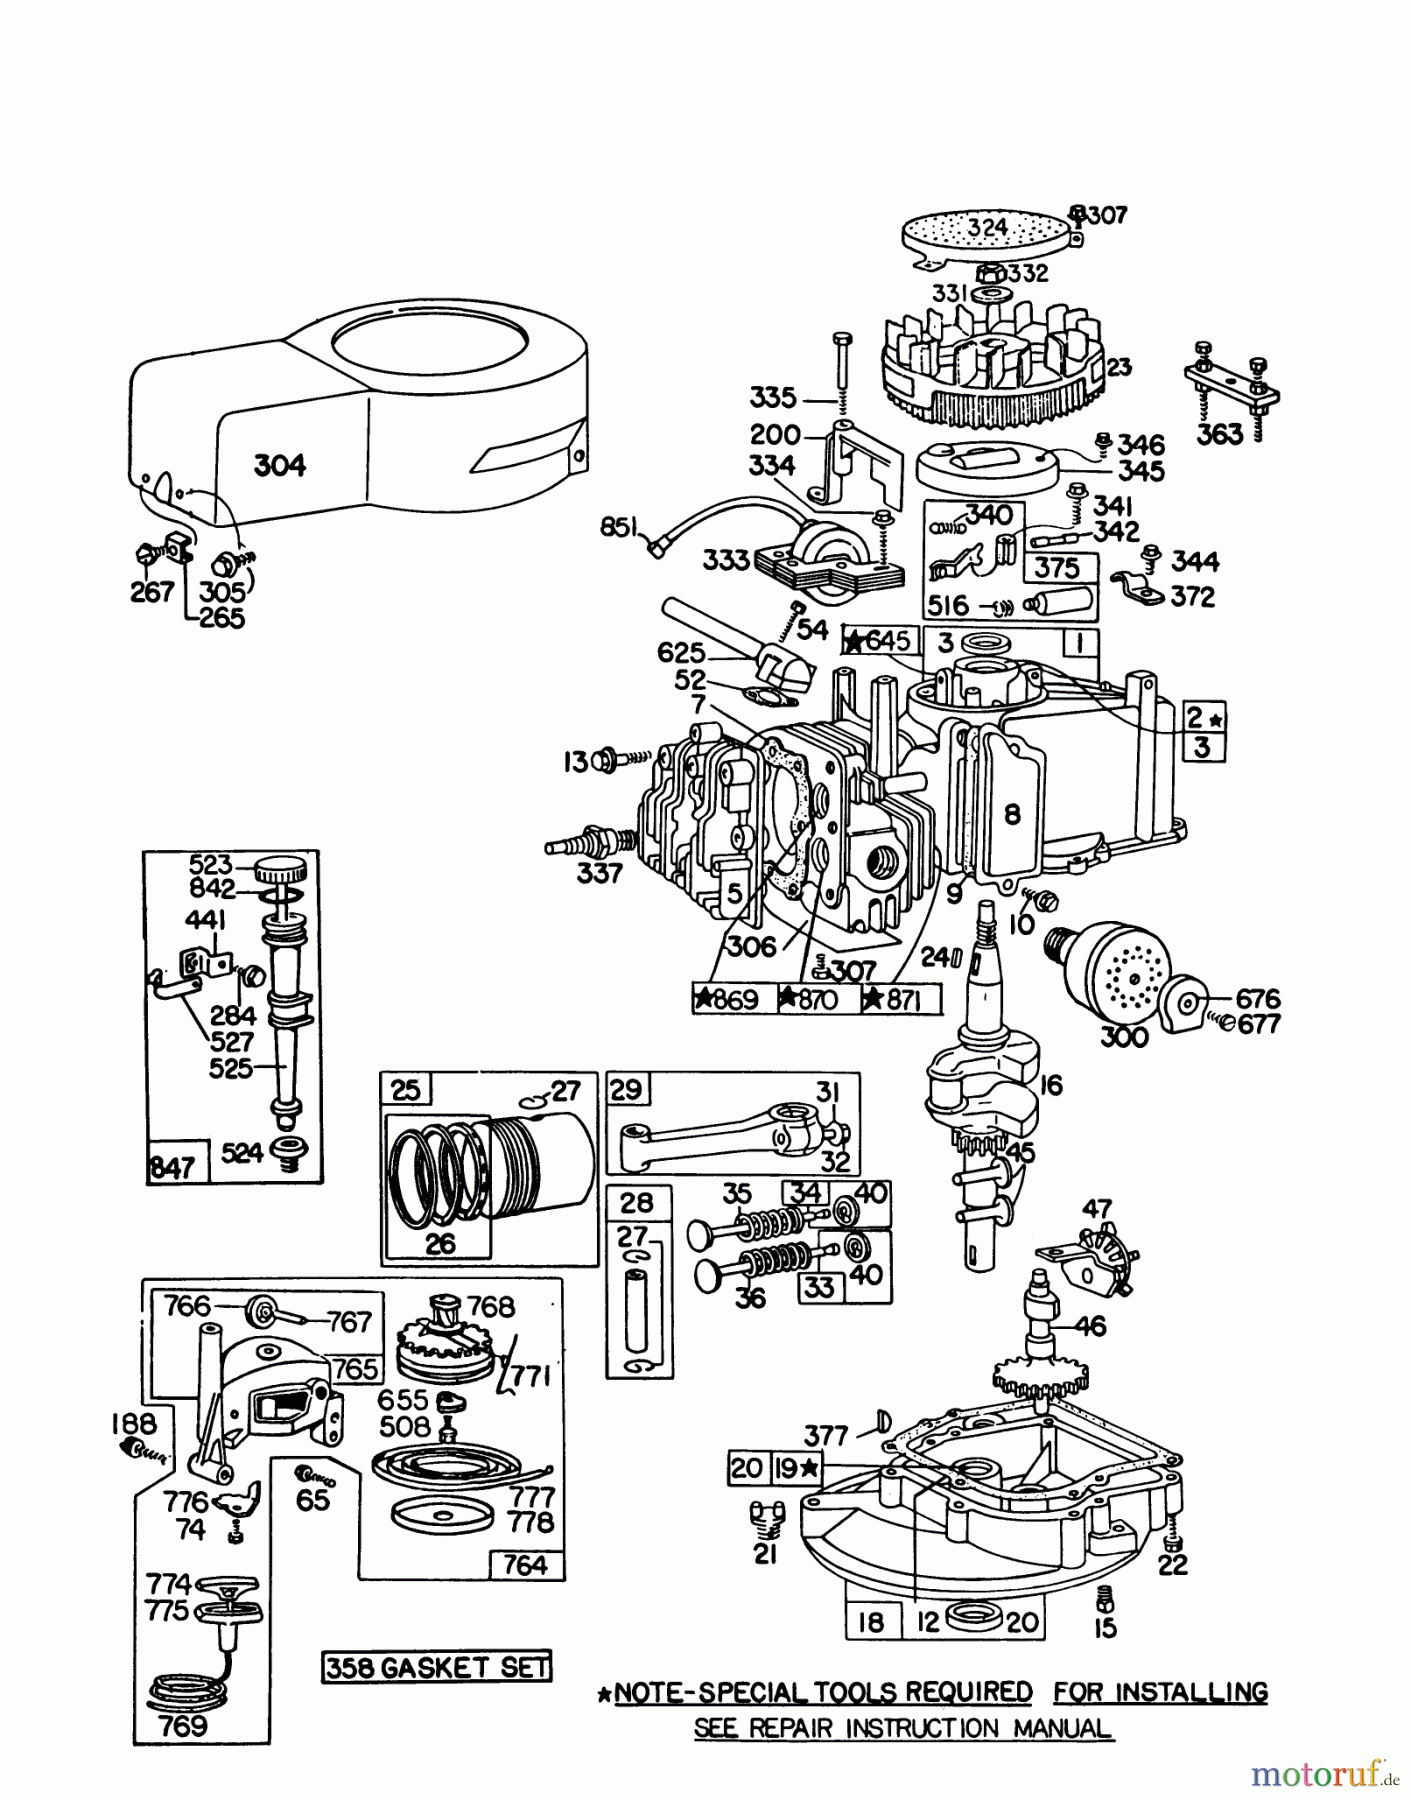  Toro Neu Mowers, Walk-Behind Seite 1 16320 - Toro Lawnmower, 1979 (9000001-9999999) ENGINE BRIGGS & STRATTON MODEL 92908-1842-02 FOR 21